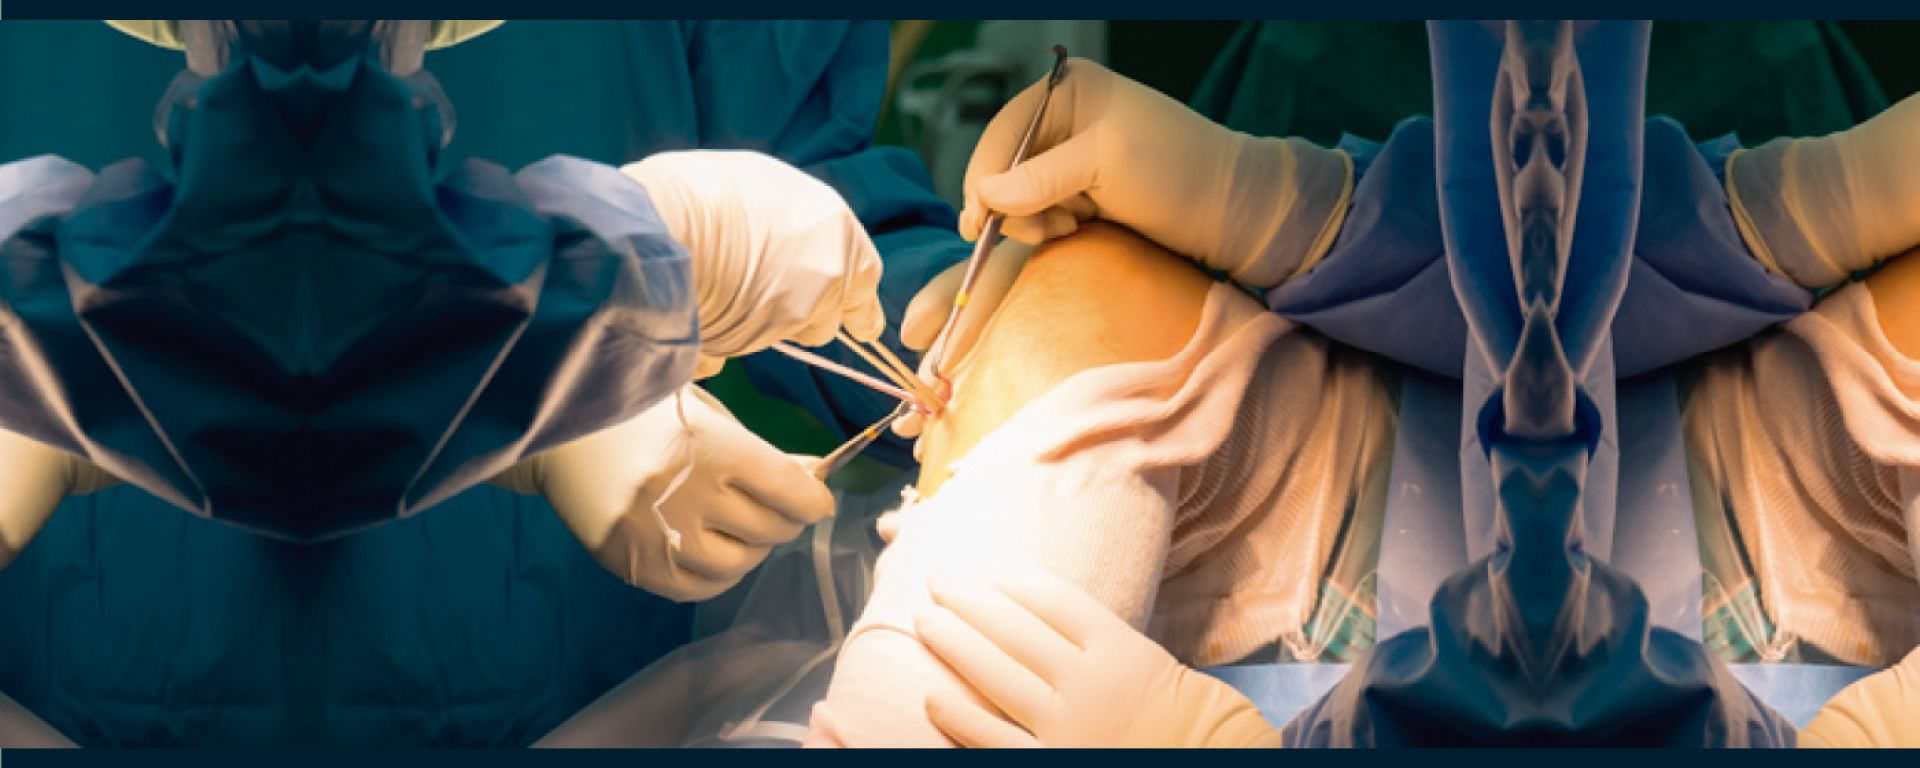 Especialización en Cirugía Vascular Periférica 